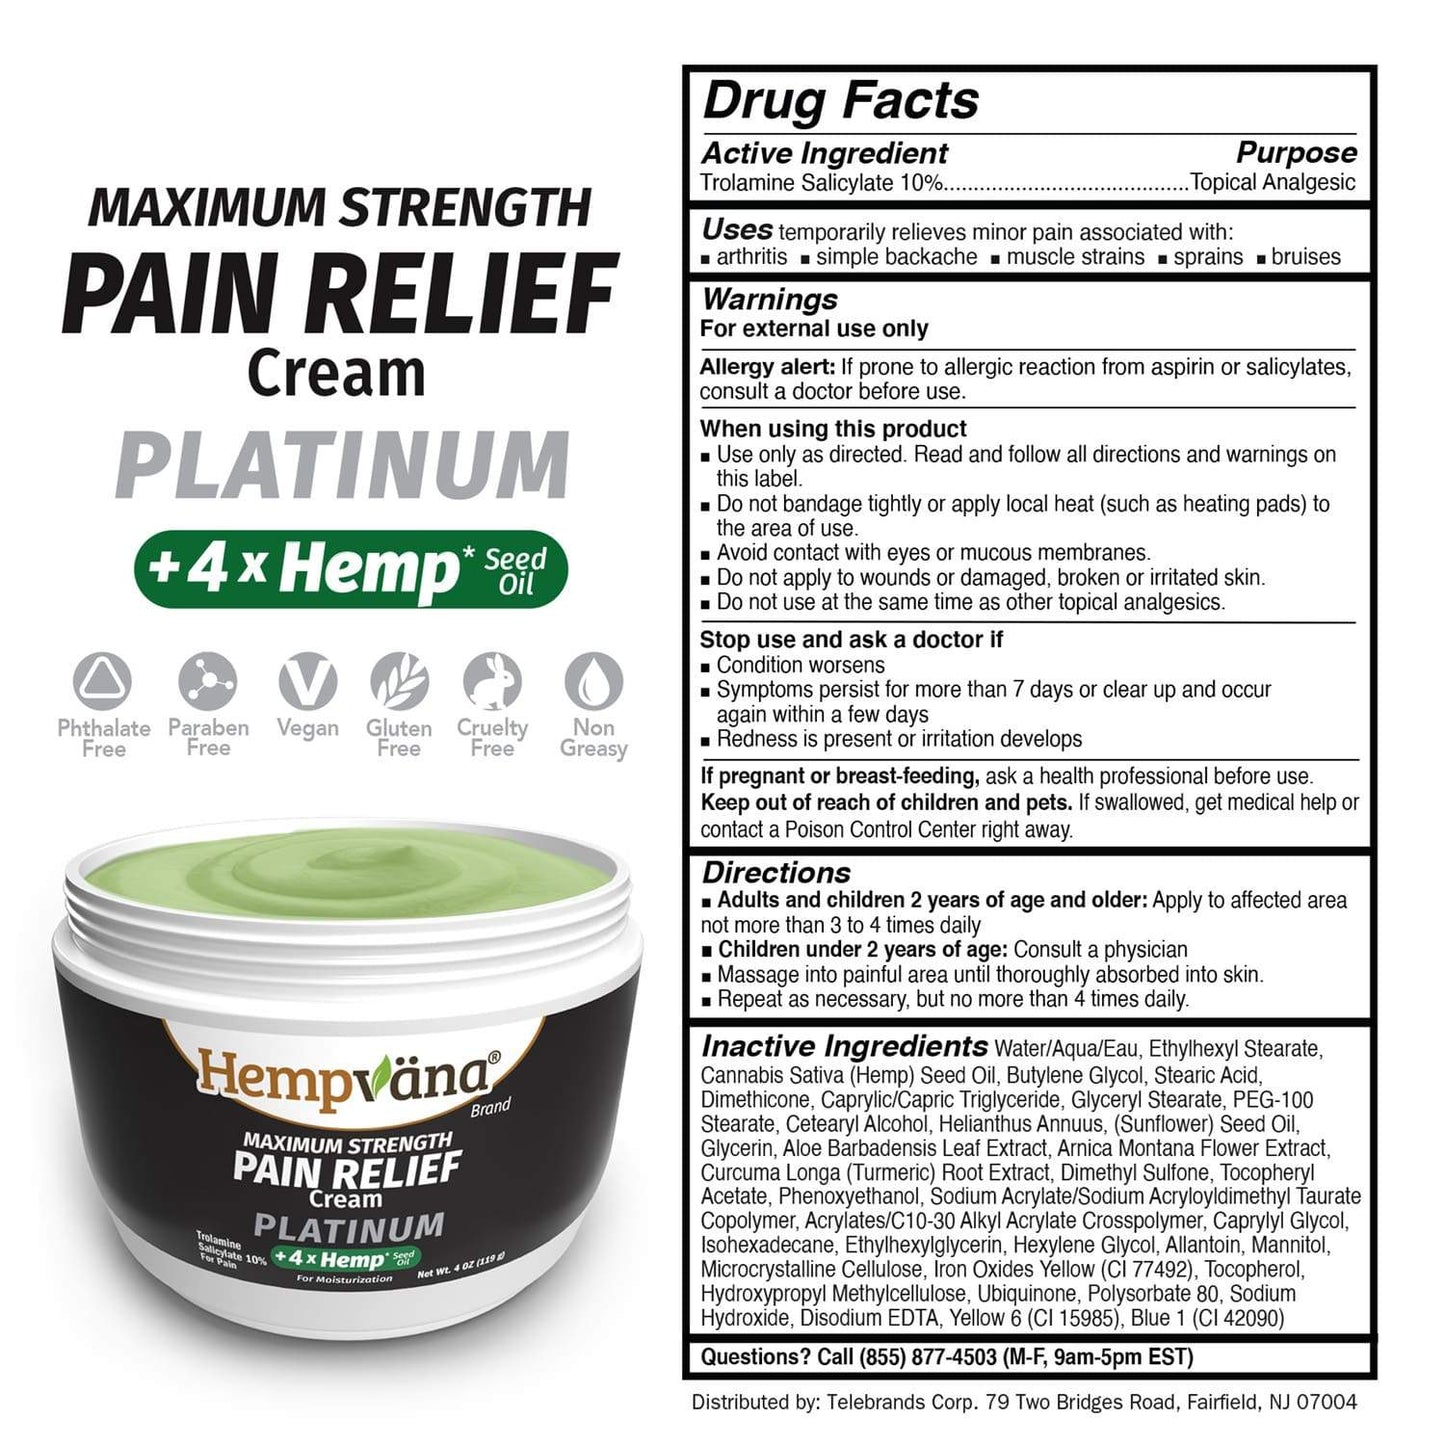 Maximum Strength Pain Relief Cream Platinum plus 4 times hemp seed oil drug panel